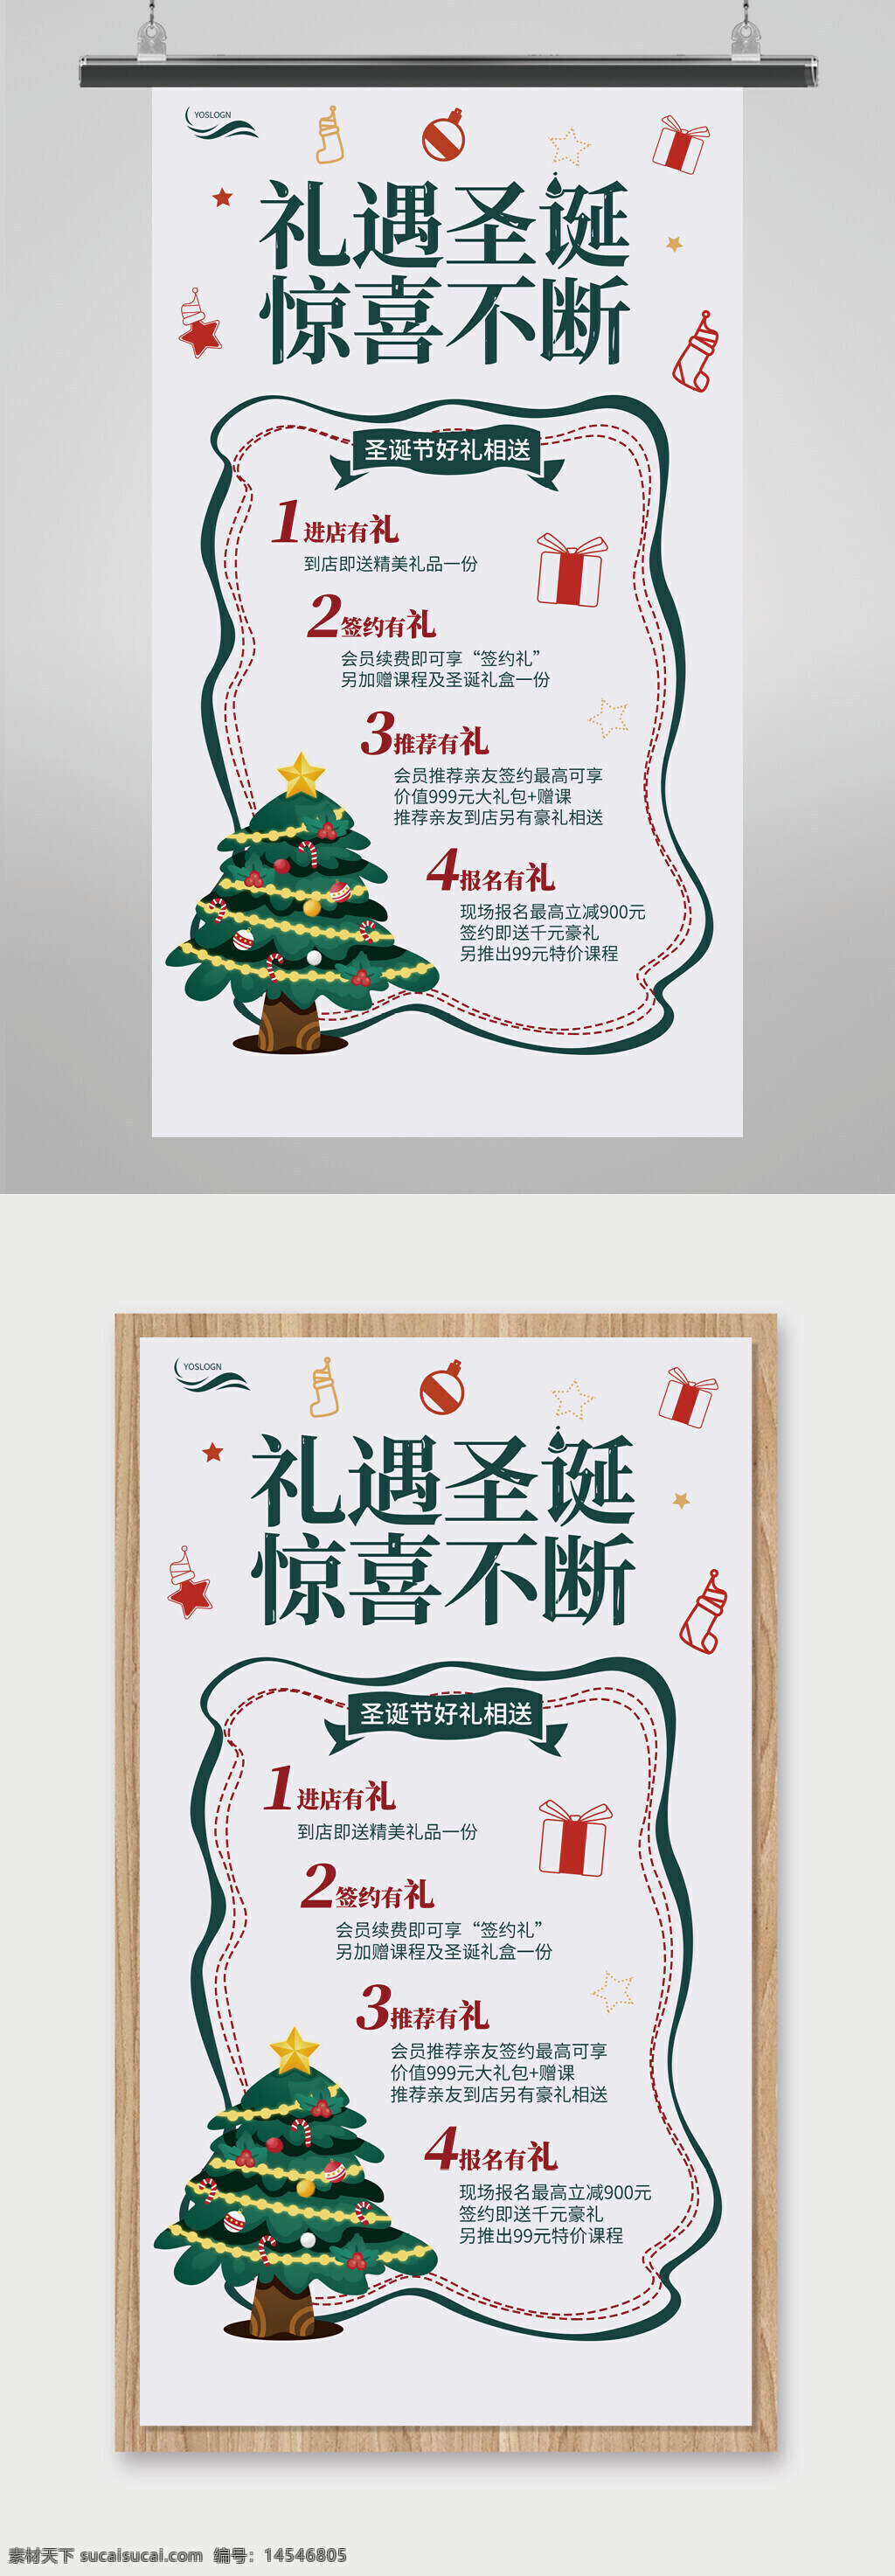 礼遇圣诞 惊喜不断 圣诞节 手机文案海报 绿红灰白背景 简约手机海报